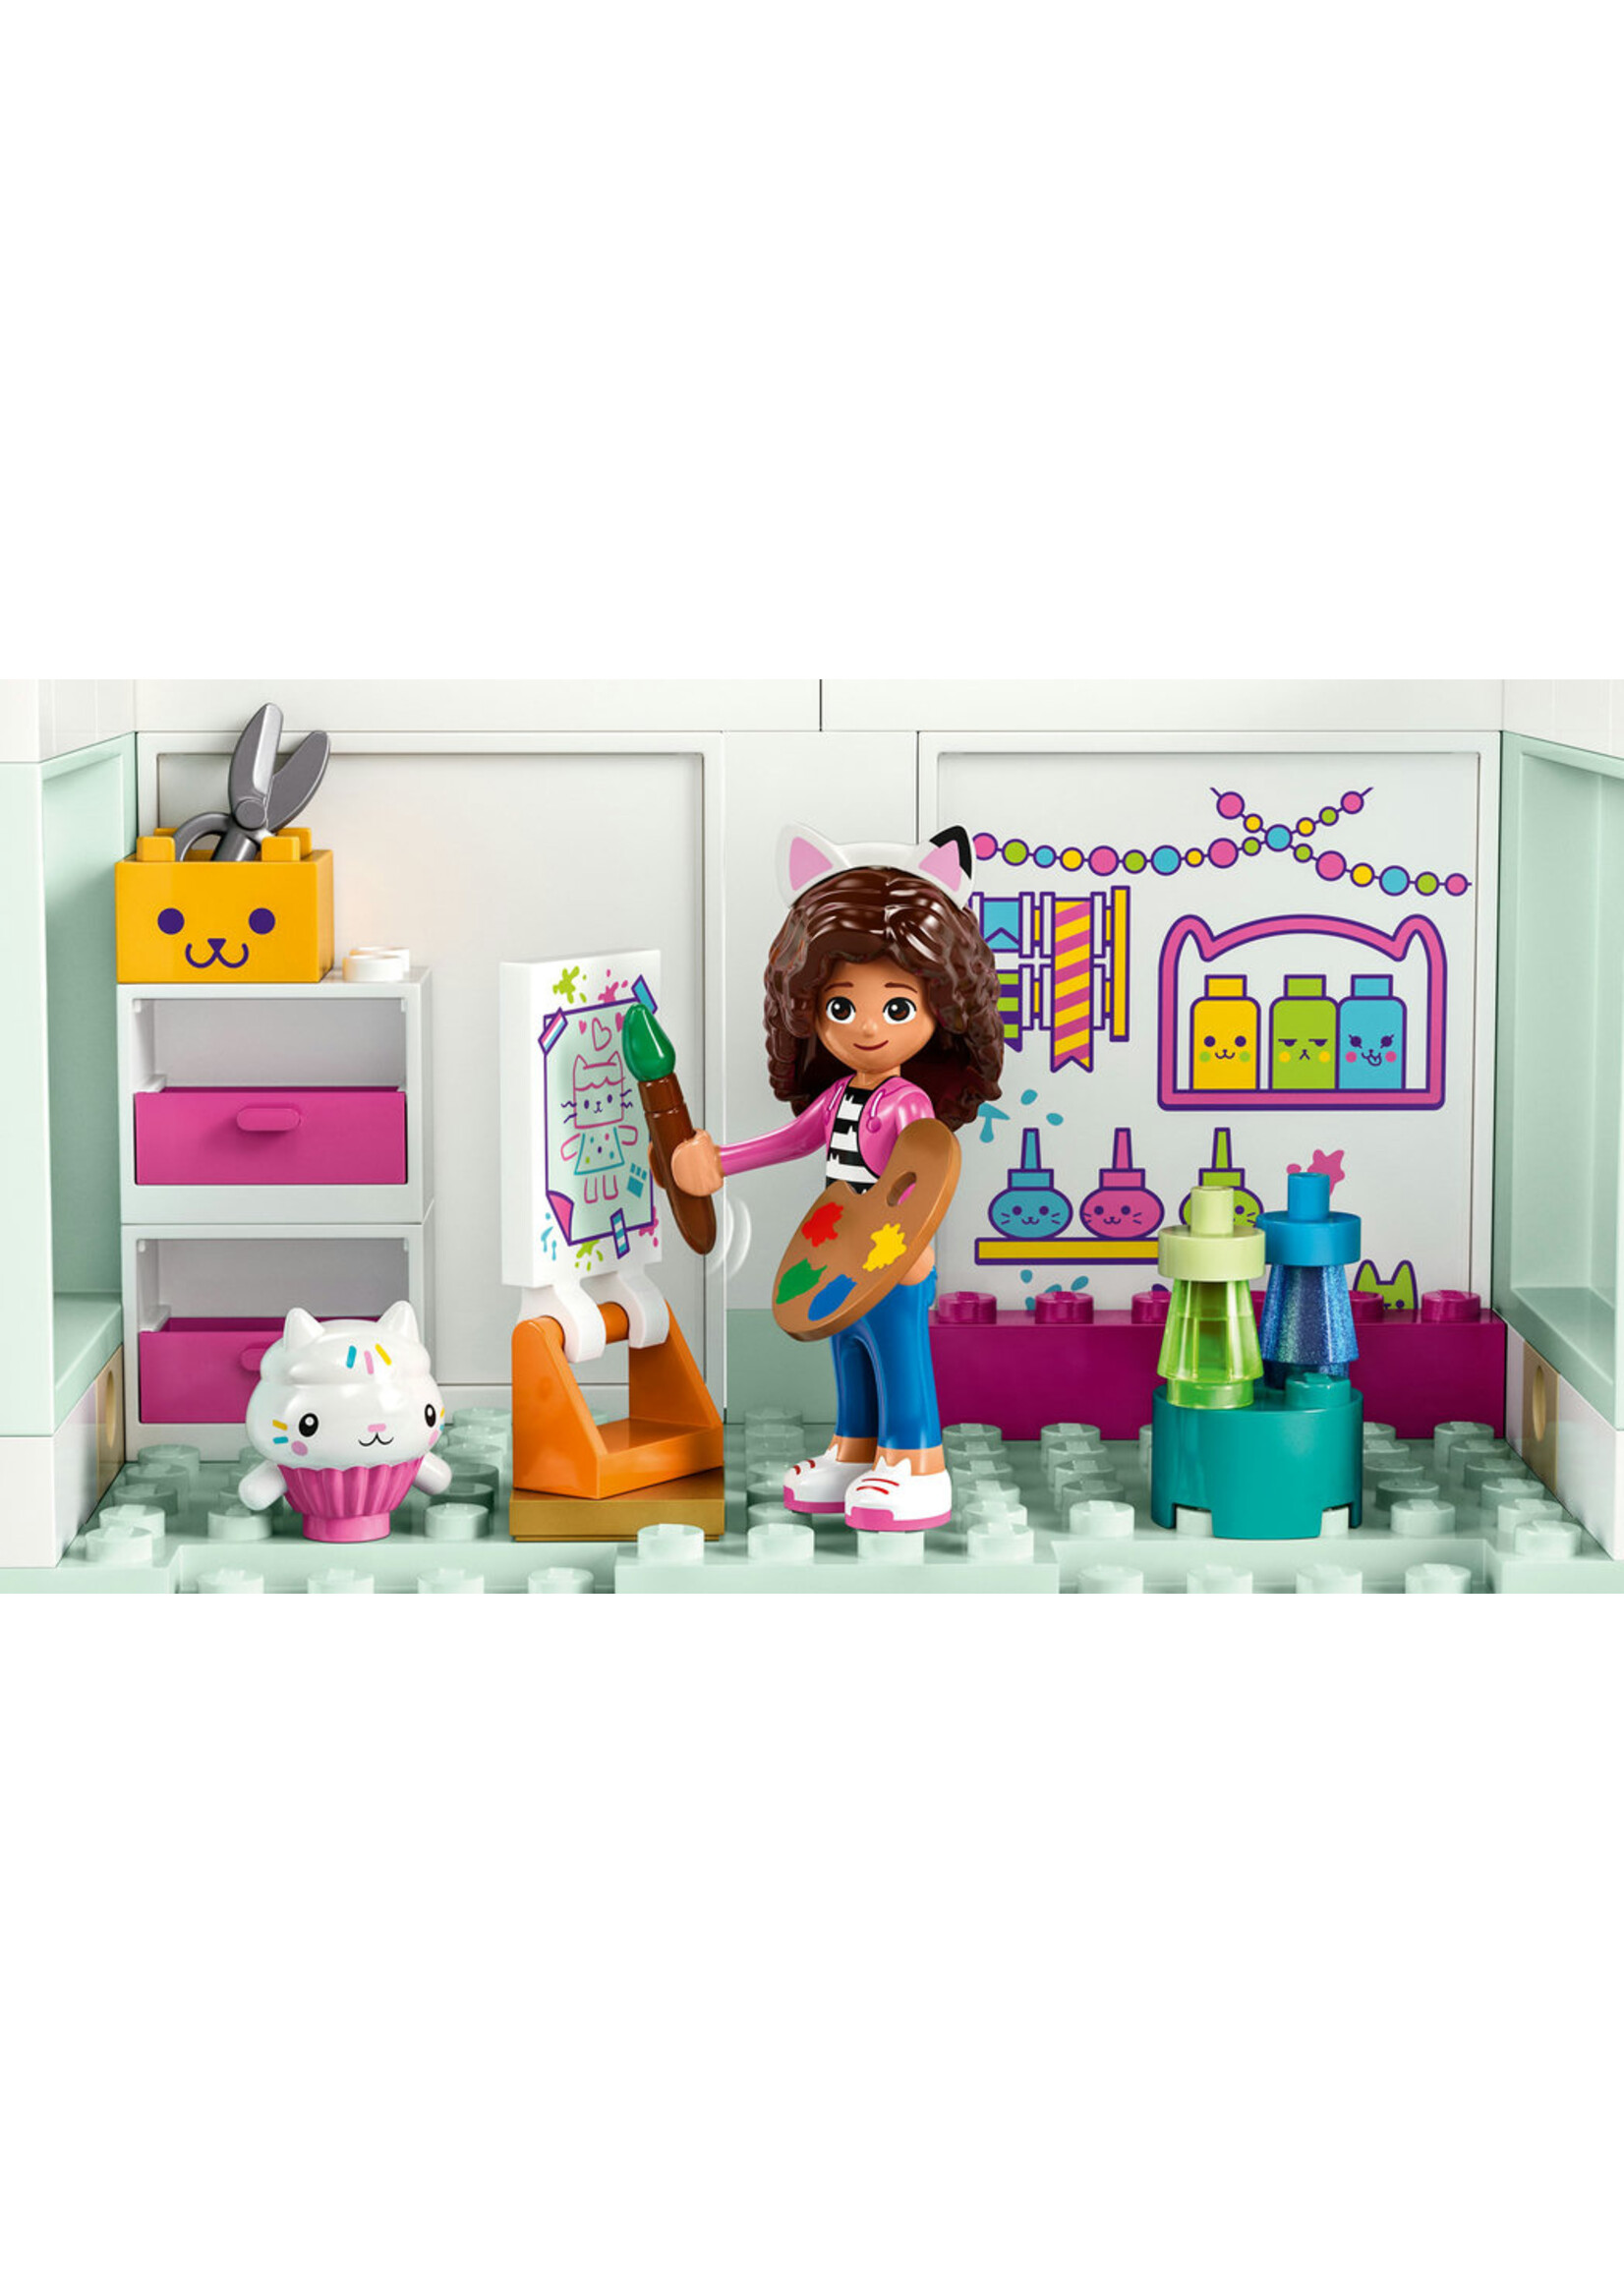 LEGO 10788 - Gabby's Dollhouse